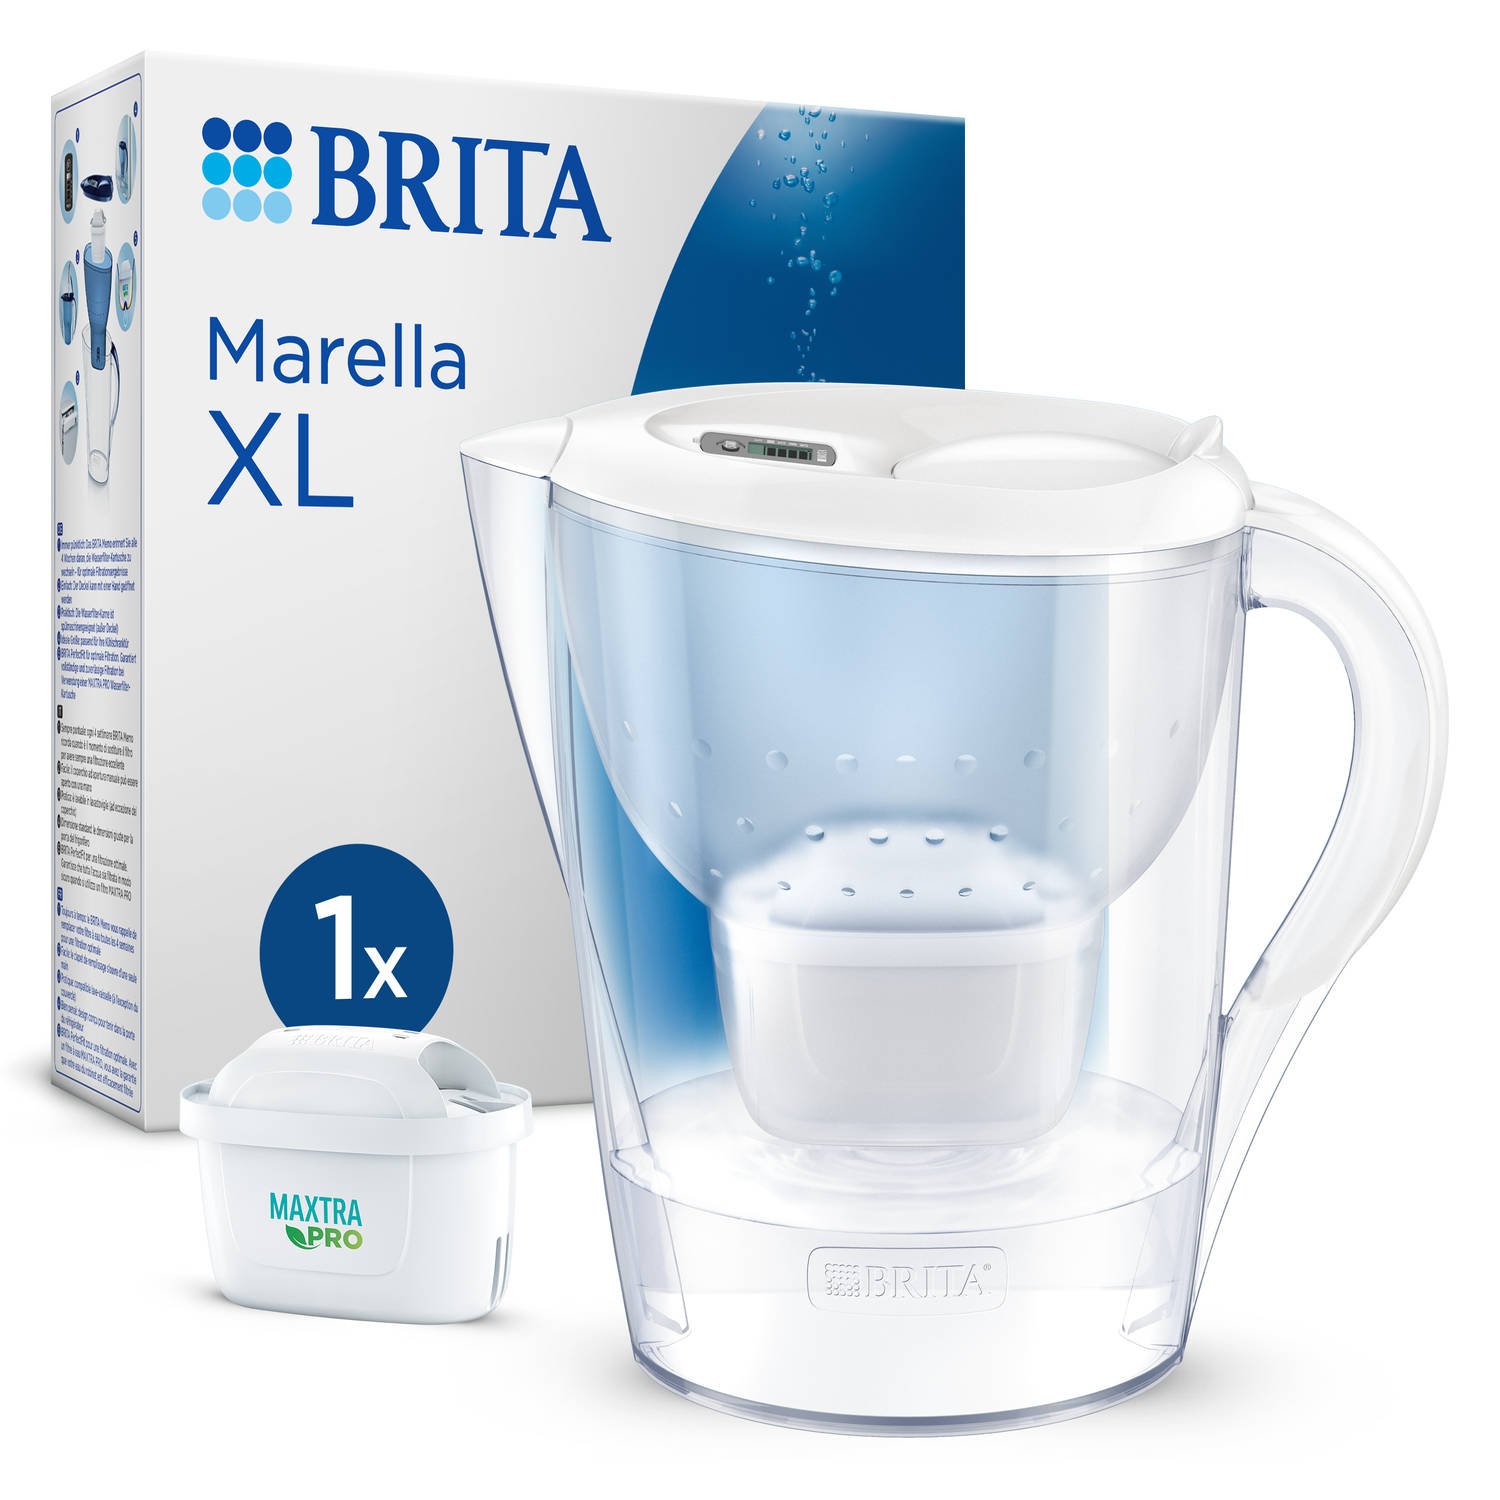 BRITA - Waterfilterkan - Marella XL - 3,5L - Wit - incl. 1 MAXTRA PRO ALL -IN-1 filterpatroon